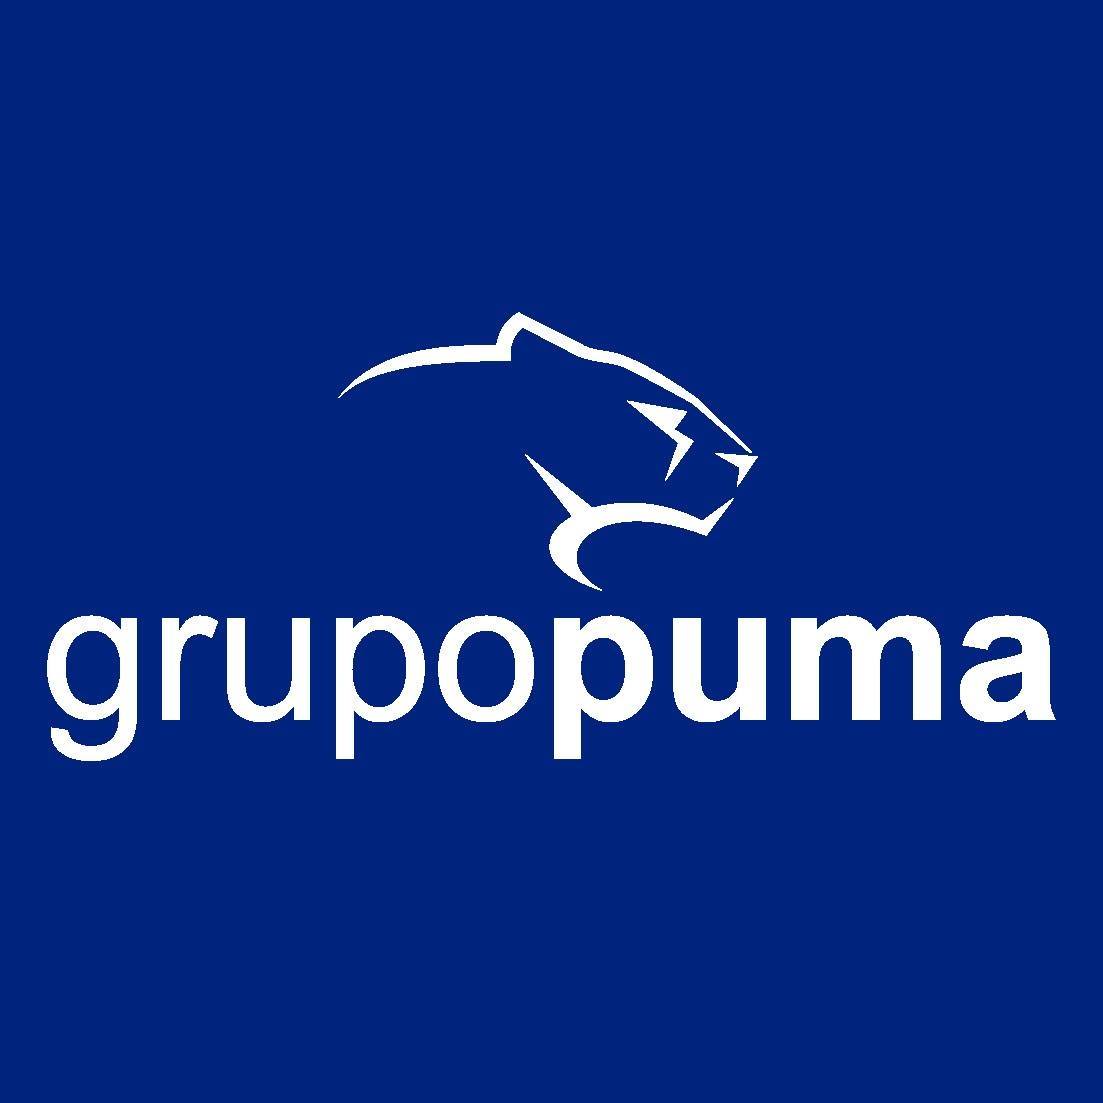 El Grupo Puma registra su nueva marca de fertilizantes